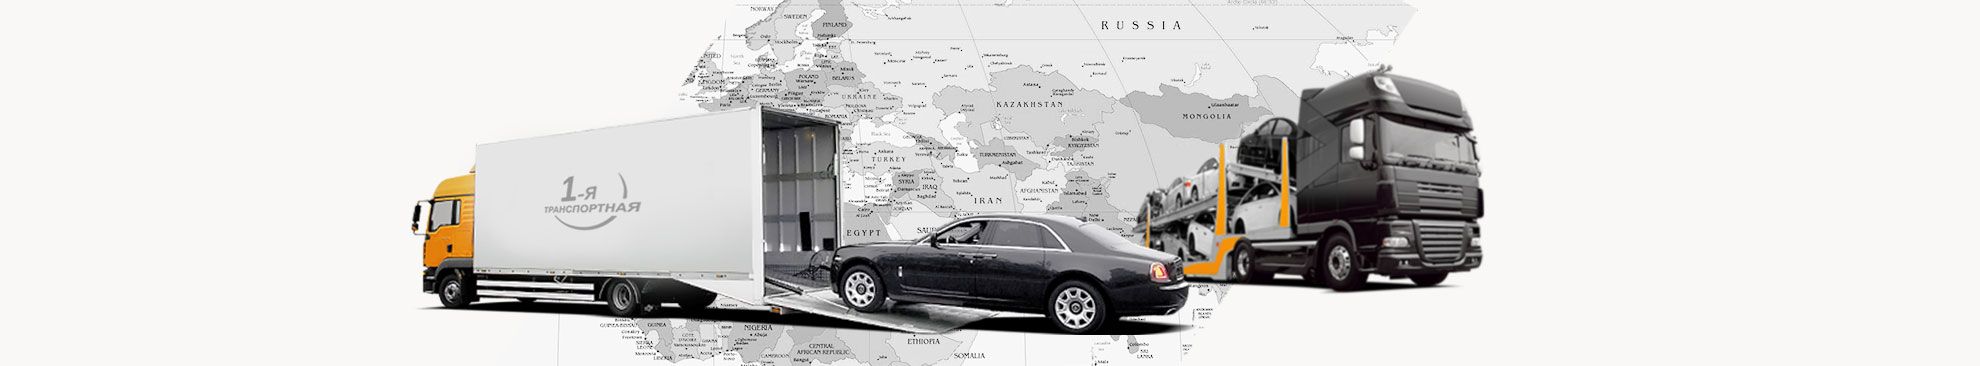 Перевозка автомобилей по России — Стоимость перевозки авто по России, СНГ и Европе фото №1